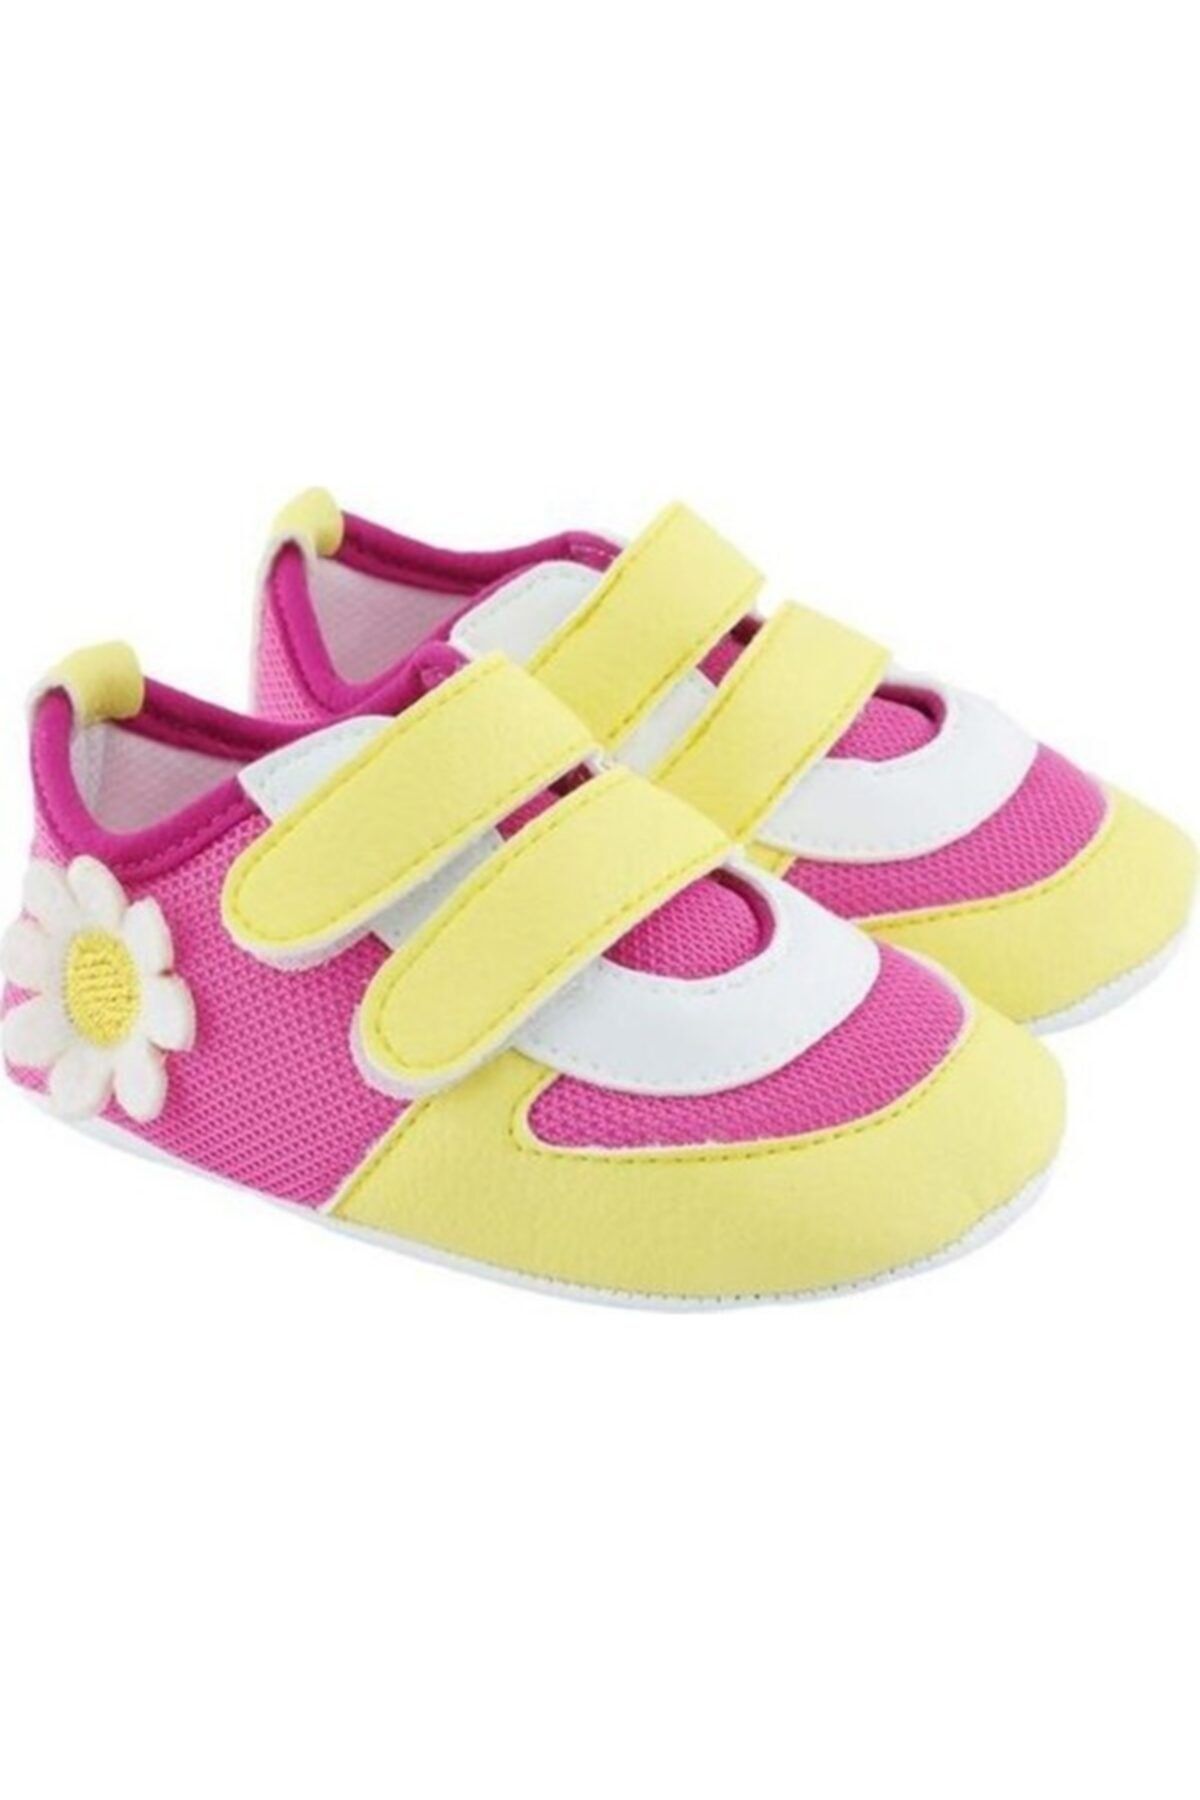 Funny Baby Kız Bebek Patik Ayakkabı Cırtlı Spor Model 1604s